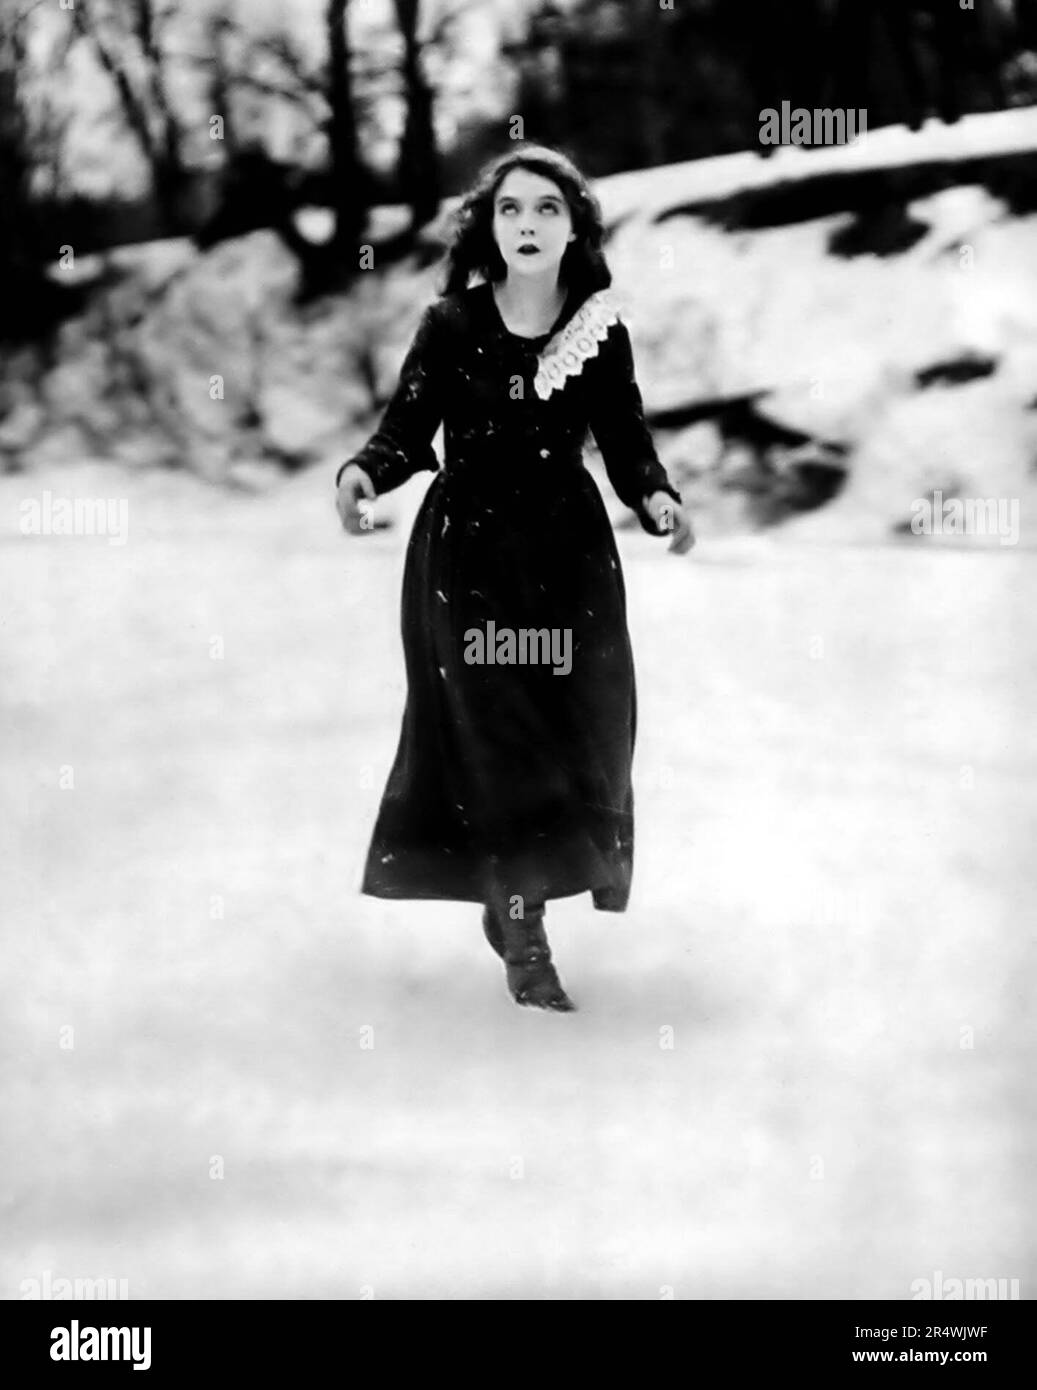 Immer noch aus dem Film "Way Down East", einem stummen, romantischen Drama-Film, Regie D. W. Griffith. Mit Lillian Gish (1893-1993), amerikanischer Bühne, Leinwand- und Fernsehschauspielerin, Regisseurin und Schriftstellerin. Vom 1920 Stockfoto